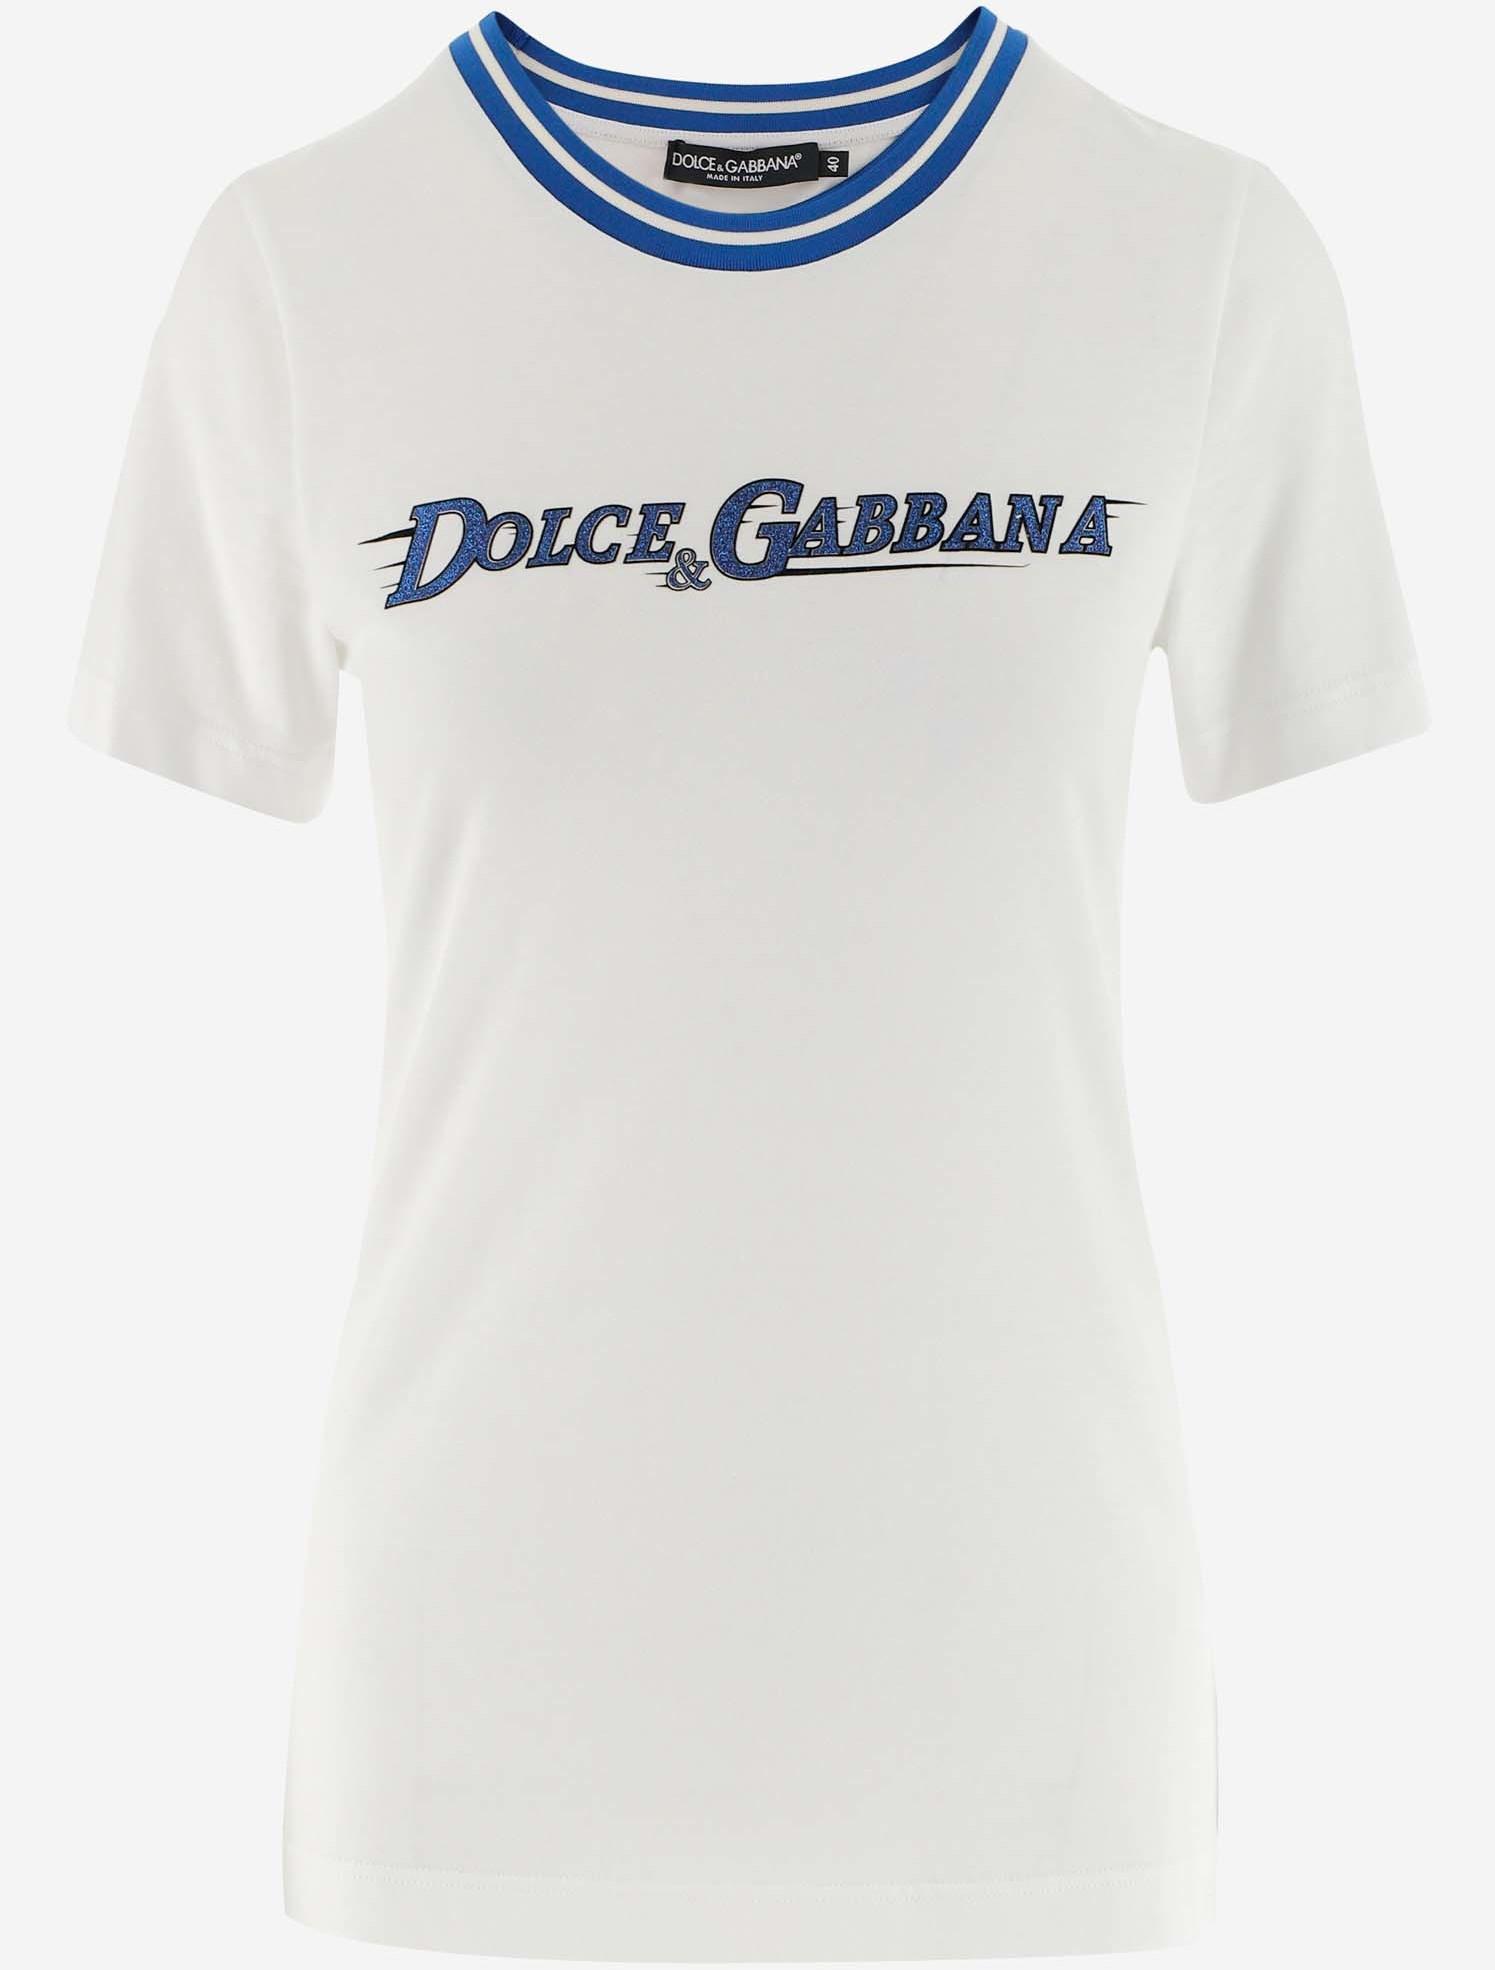 dolce and gabbana women shirt